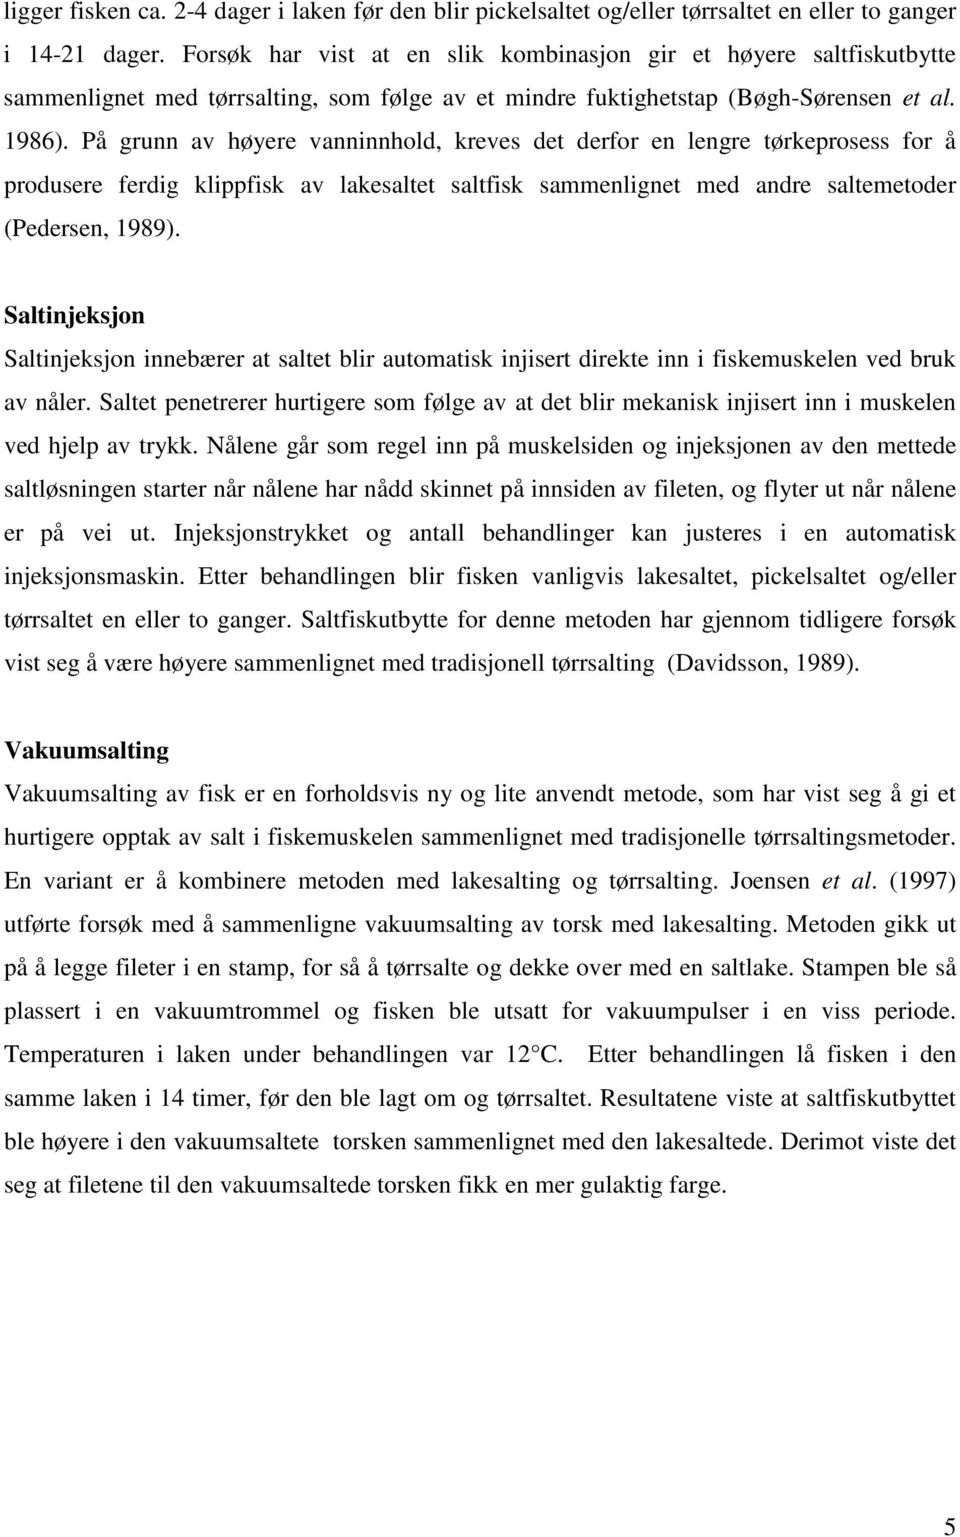 På grunn av høyere vanninnhold, kreves det derfor en lengre tørkeprosess for å produsere ferdig klippfisk av lakesaltet saltfisk sammenlignet med andre saltemetoder (Pedersen, 1989).